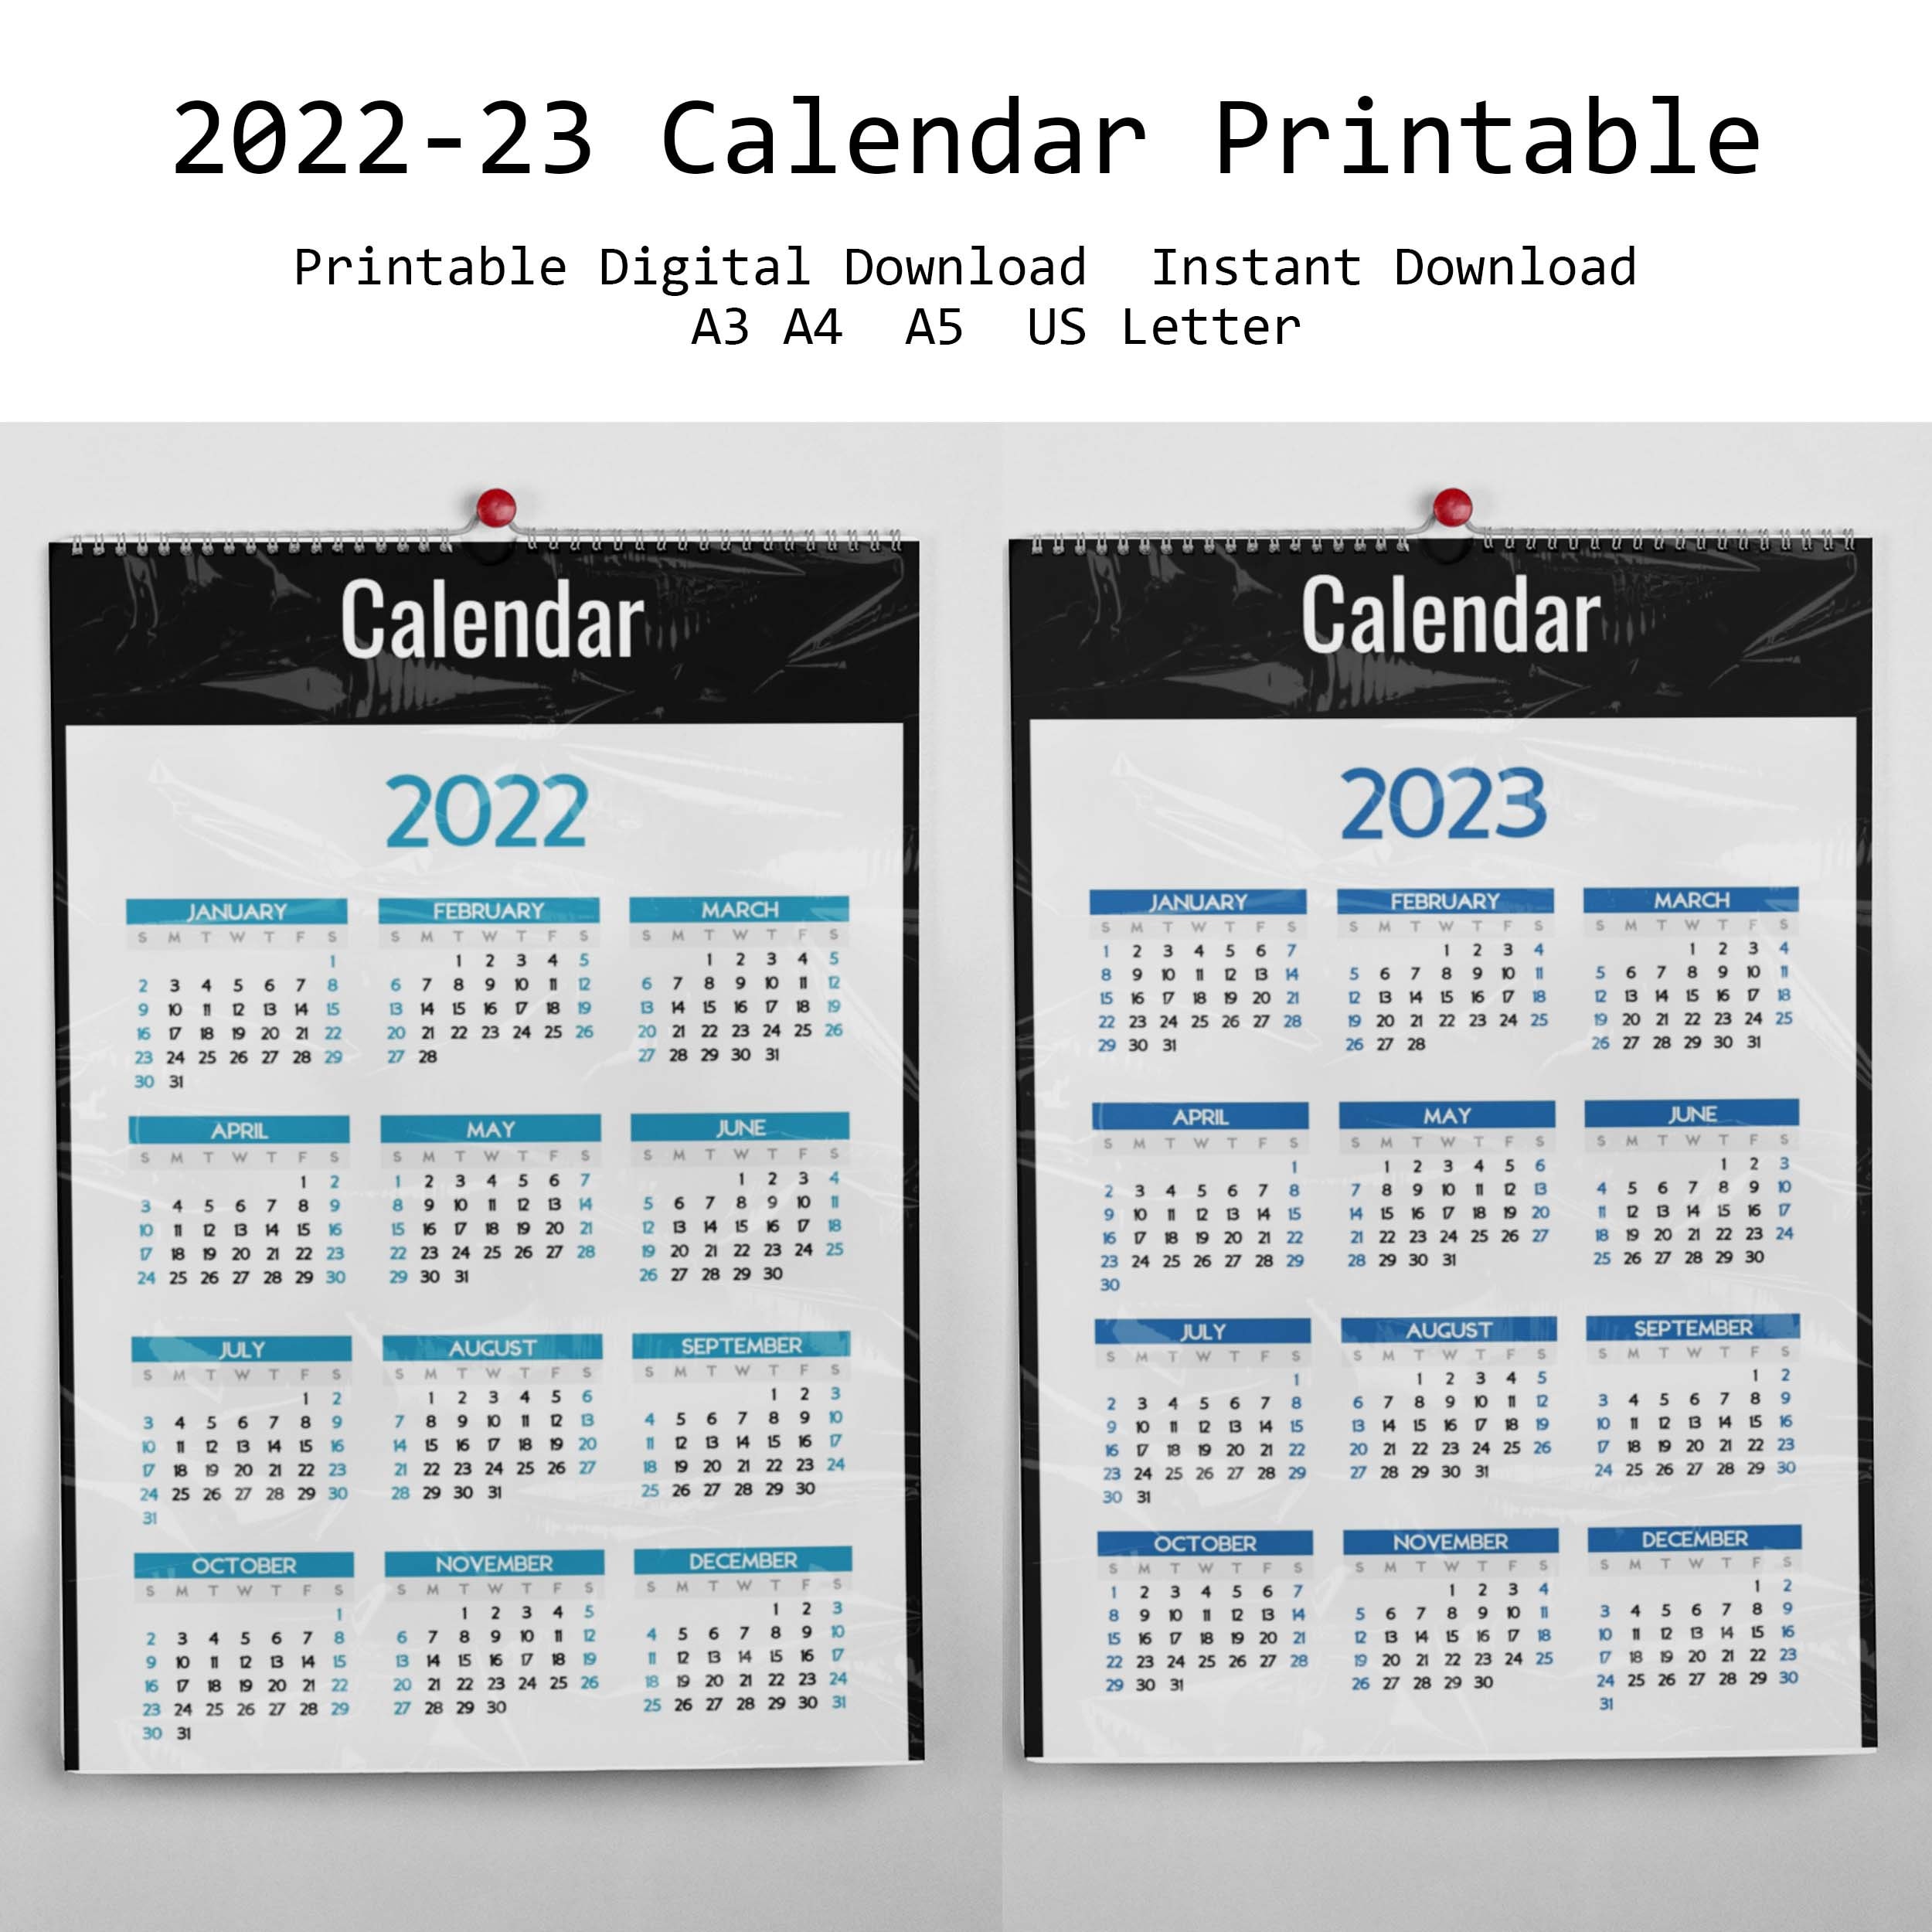 Календарь 2023 2 2. Календарь 23. Календарь 23г. Календарь 023.